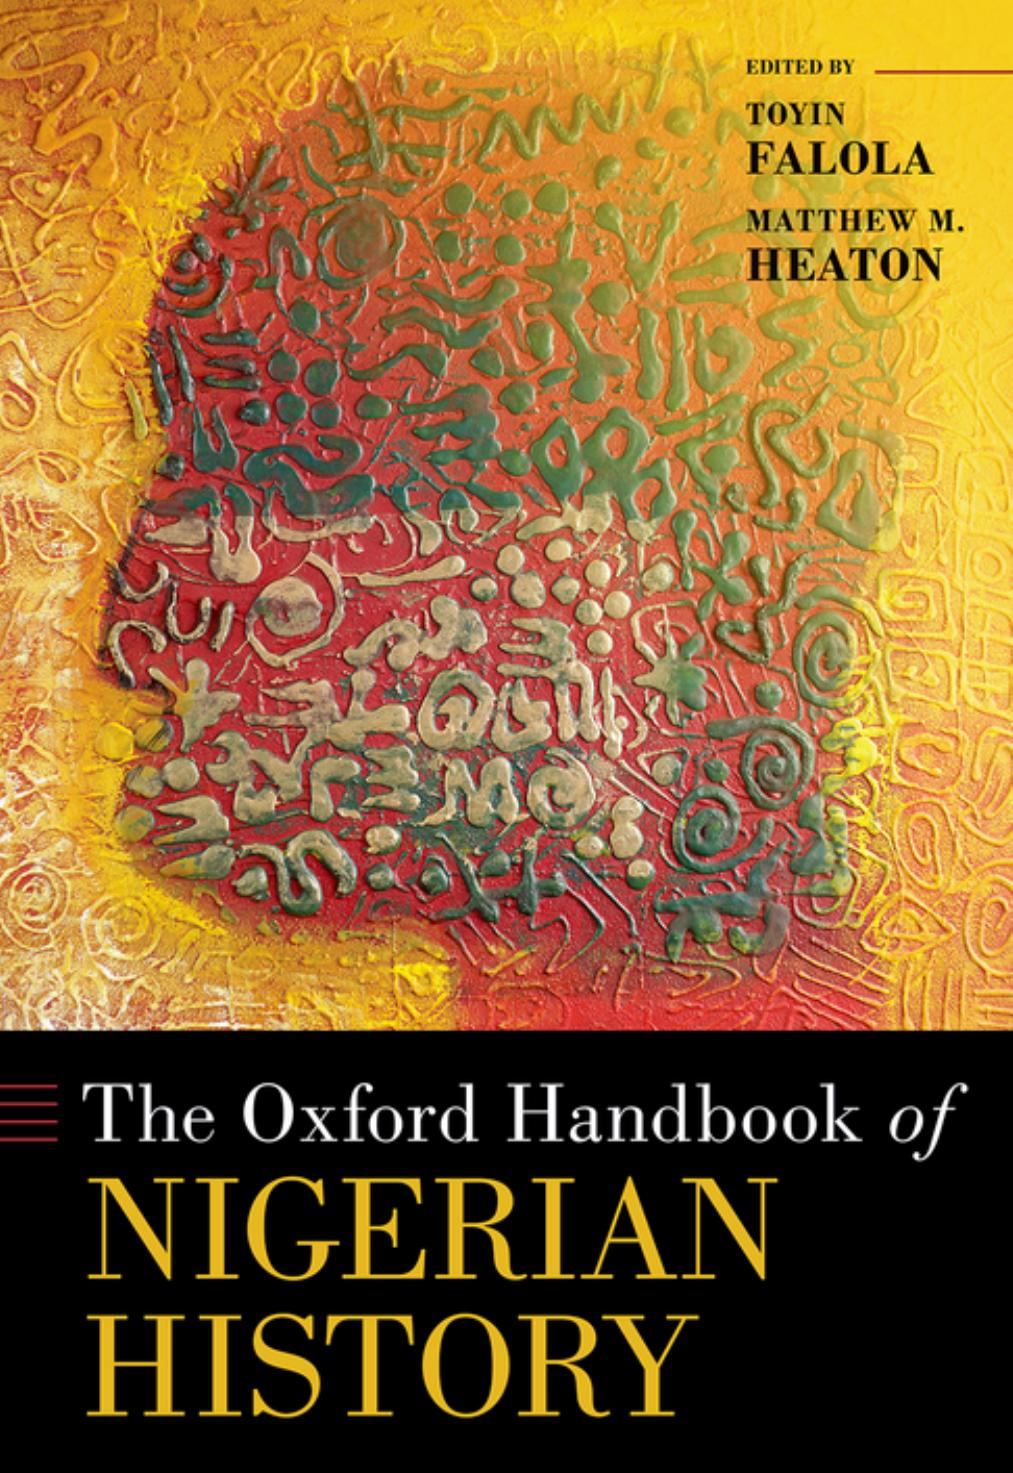 The Oxford Handbook of Nigerian History by Toyin Falola